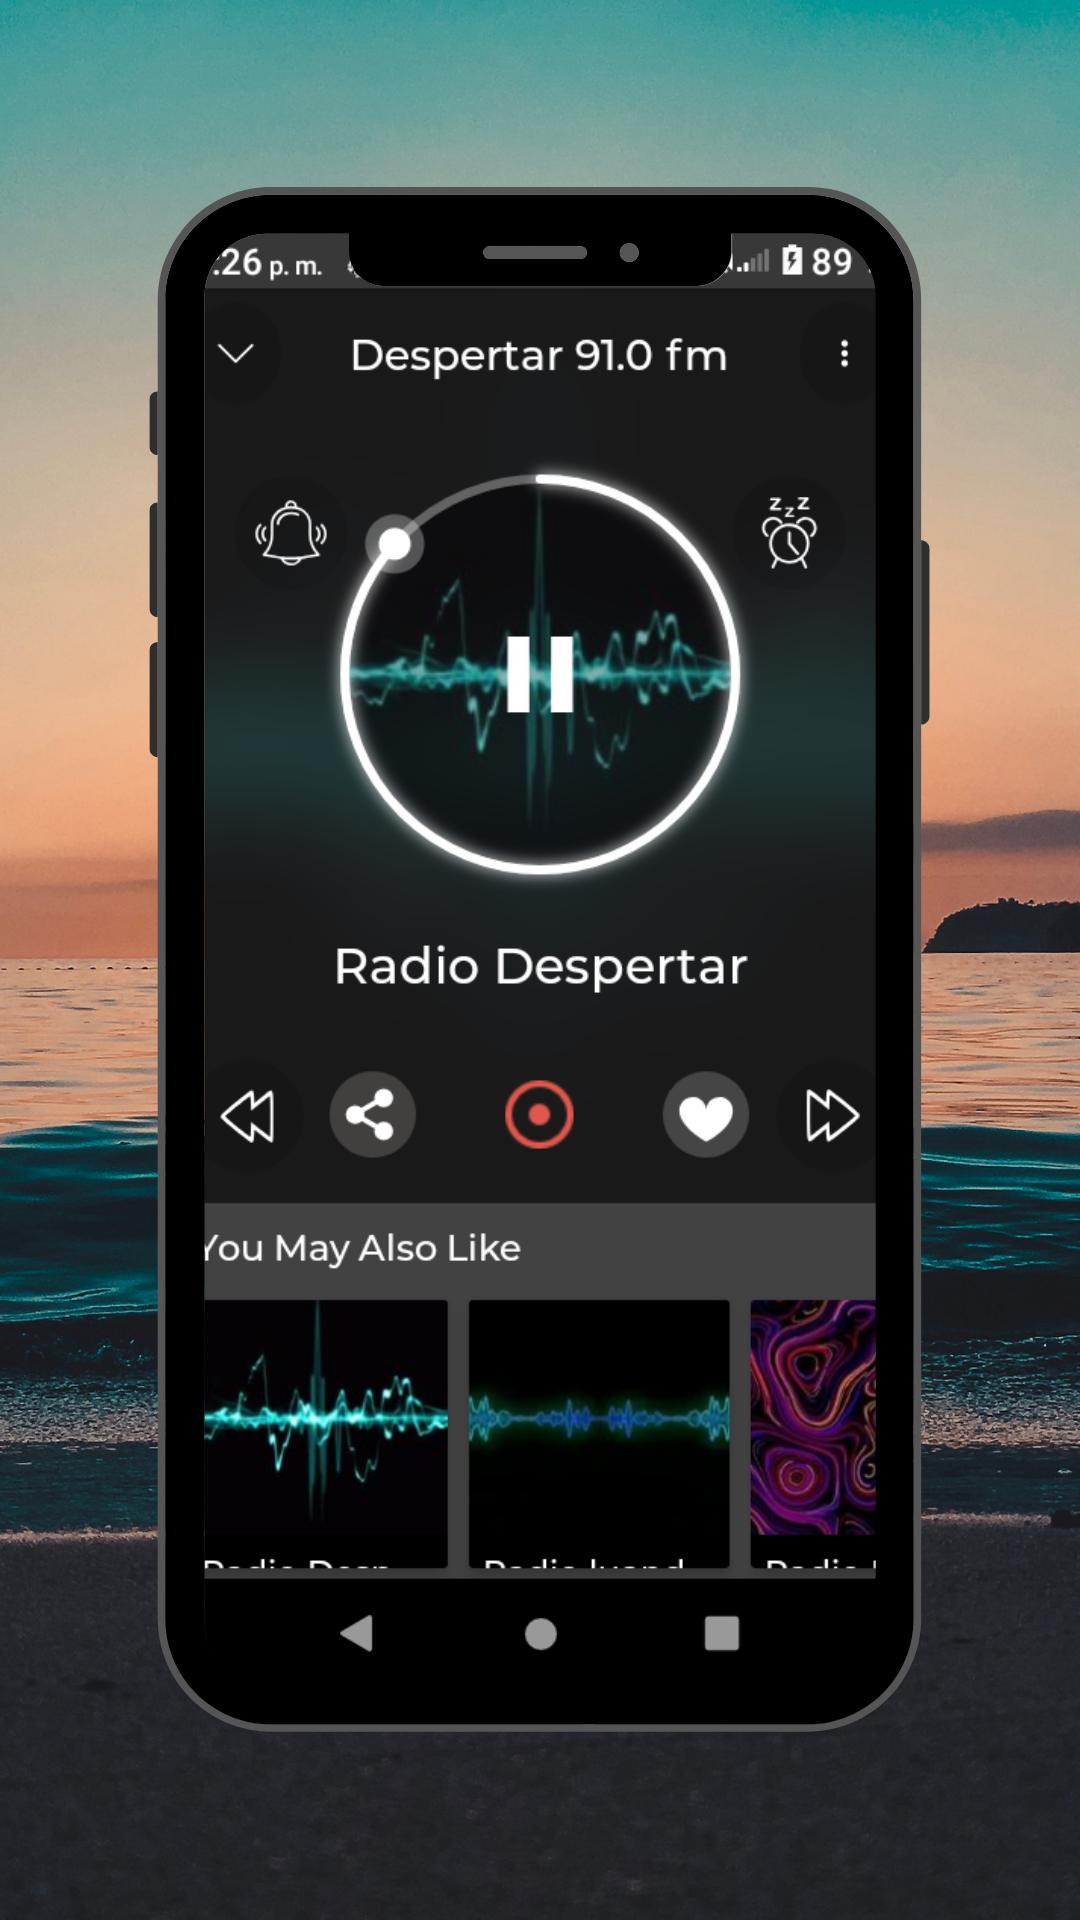 Radio Despertar Angola 91.0 fm APK für Android herunterladen